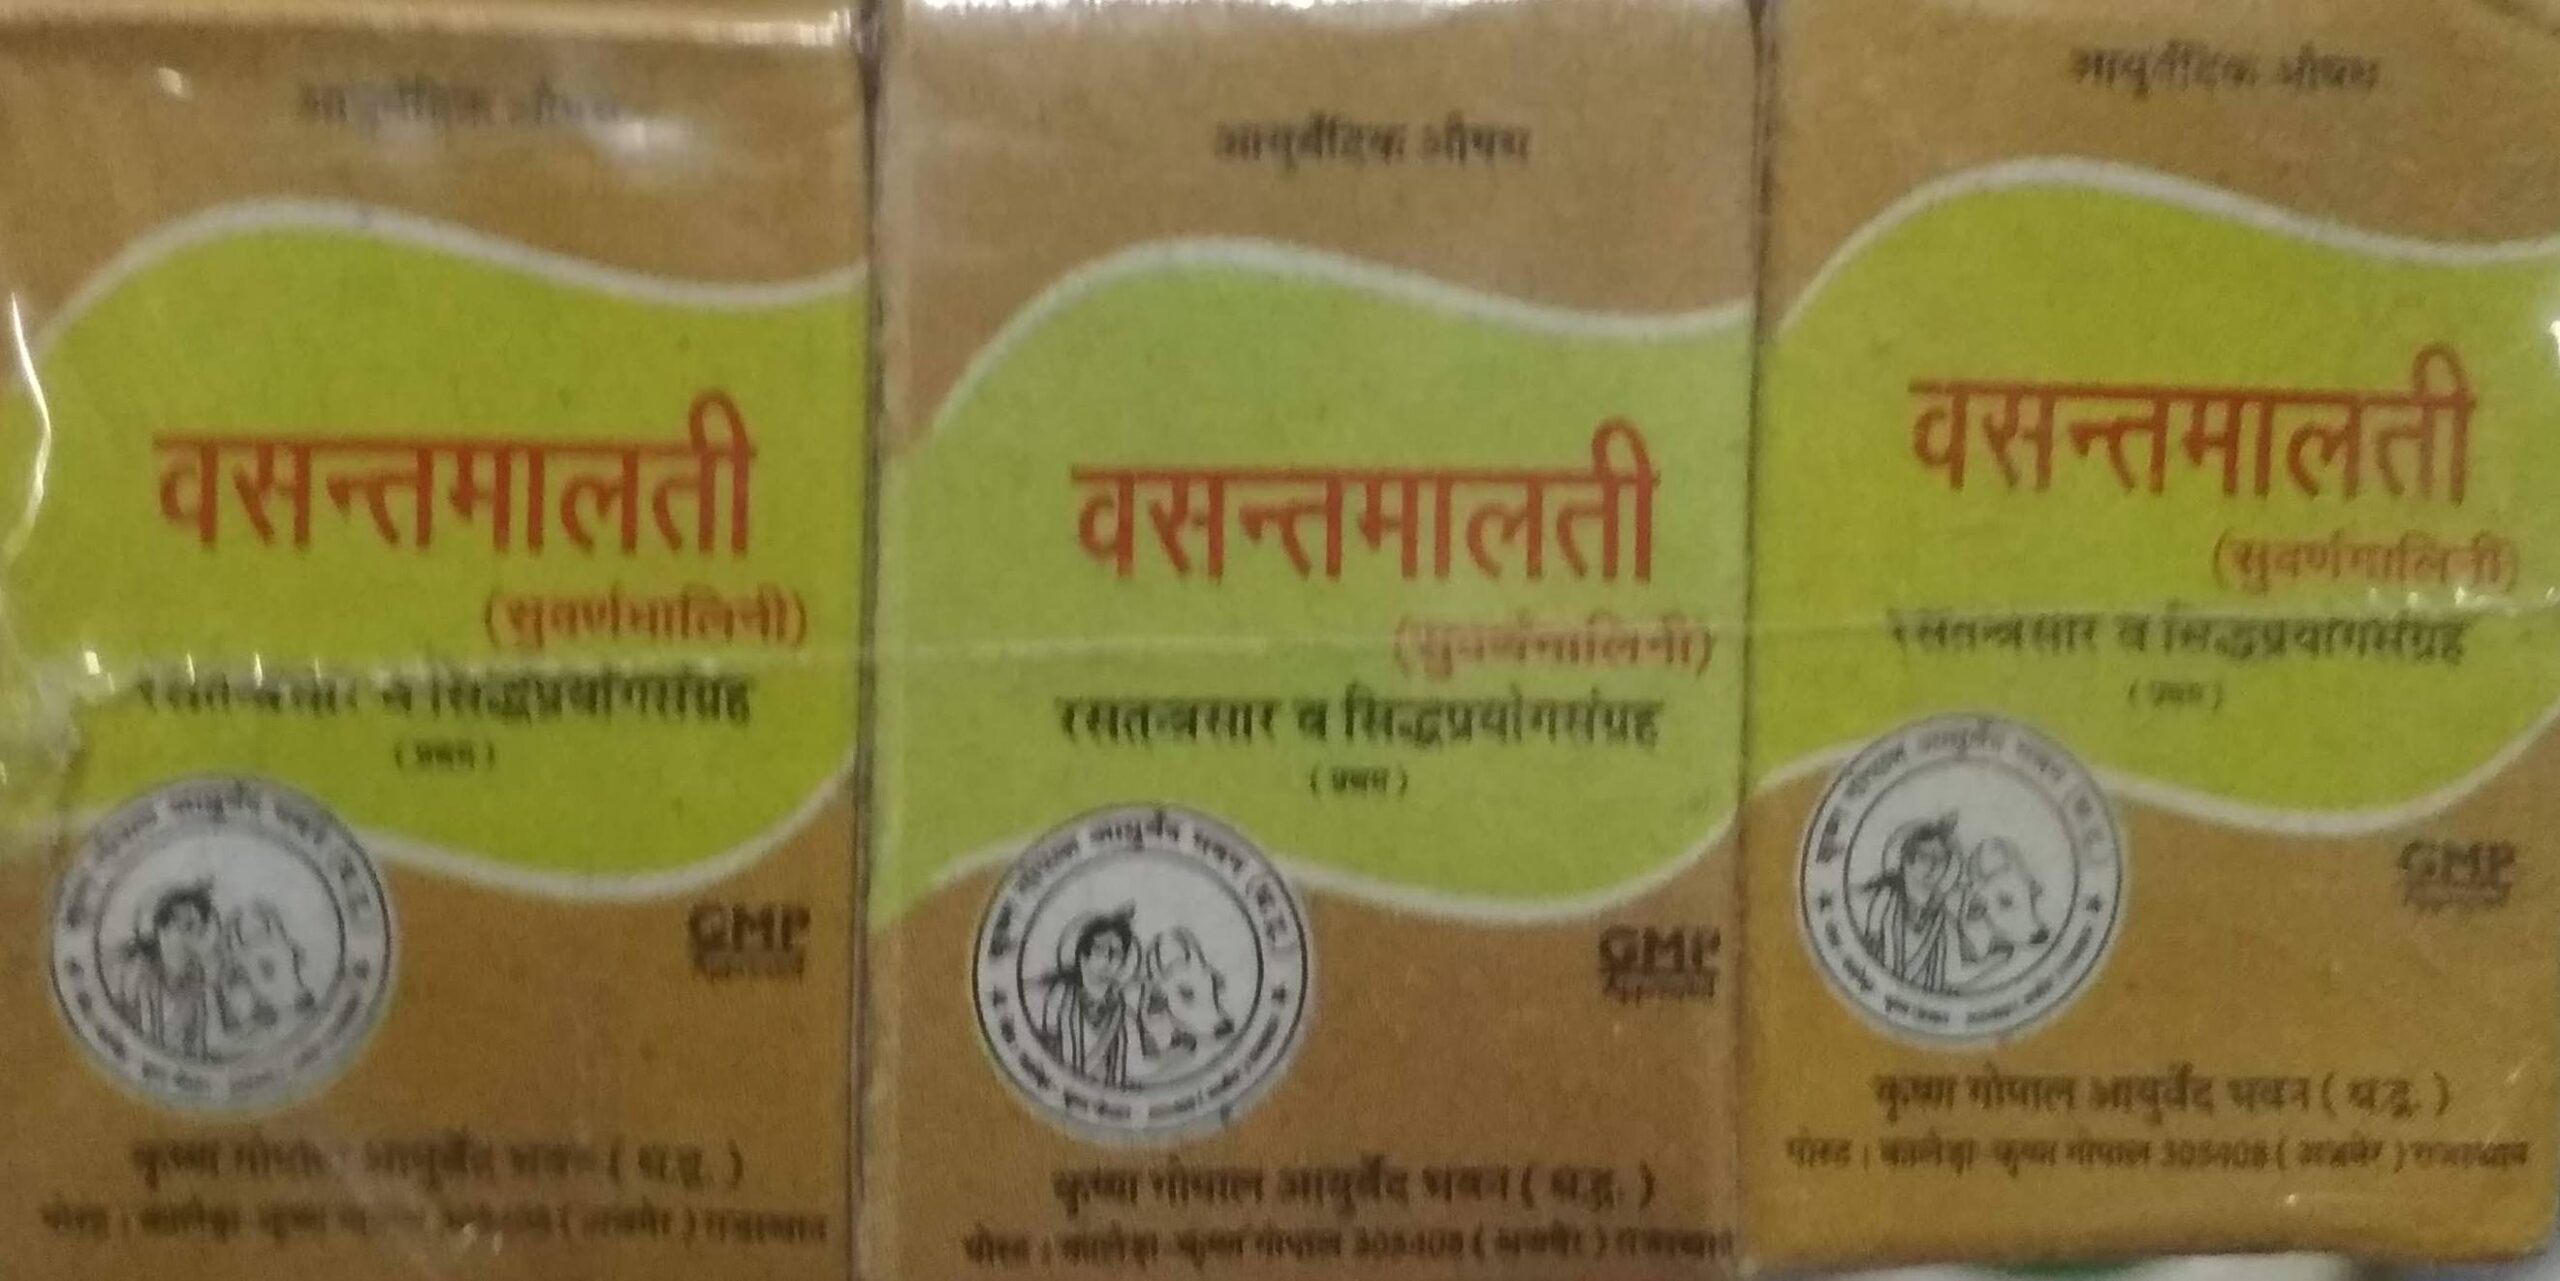 Vasant malati ras swarna yukt 1 gm upto 20% off Krishna Gopal Ayurved bhavan